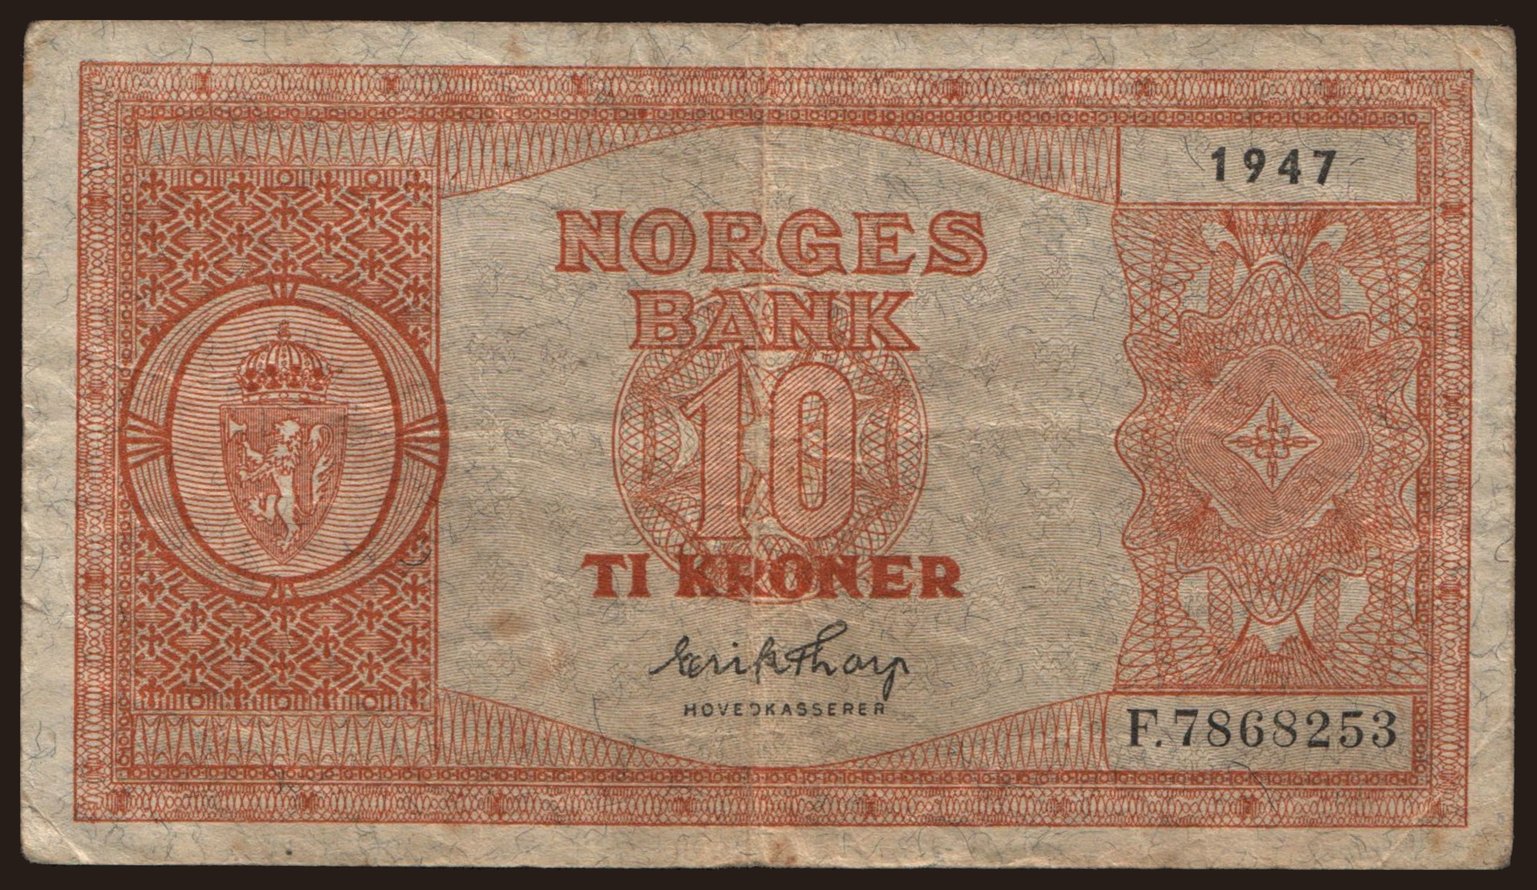 10 kroner, 1947